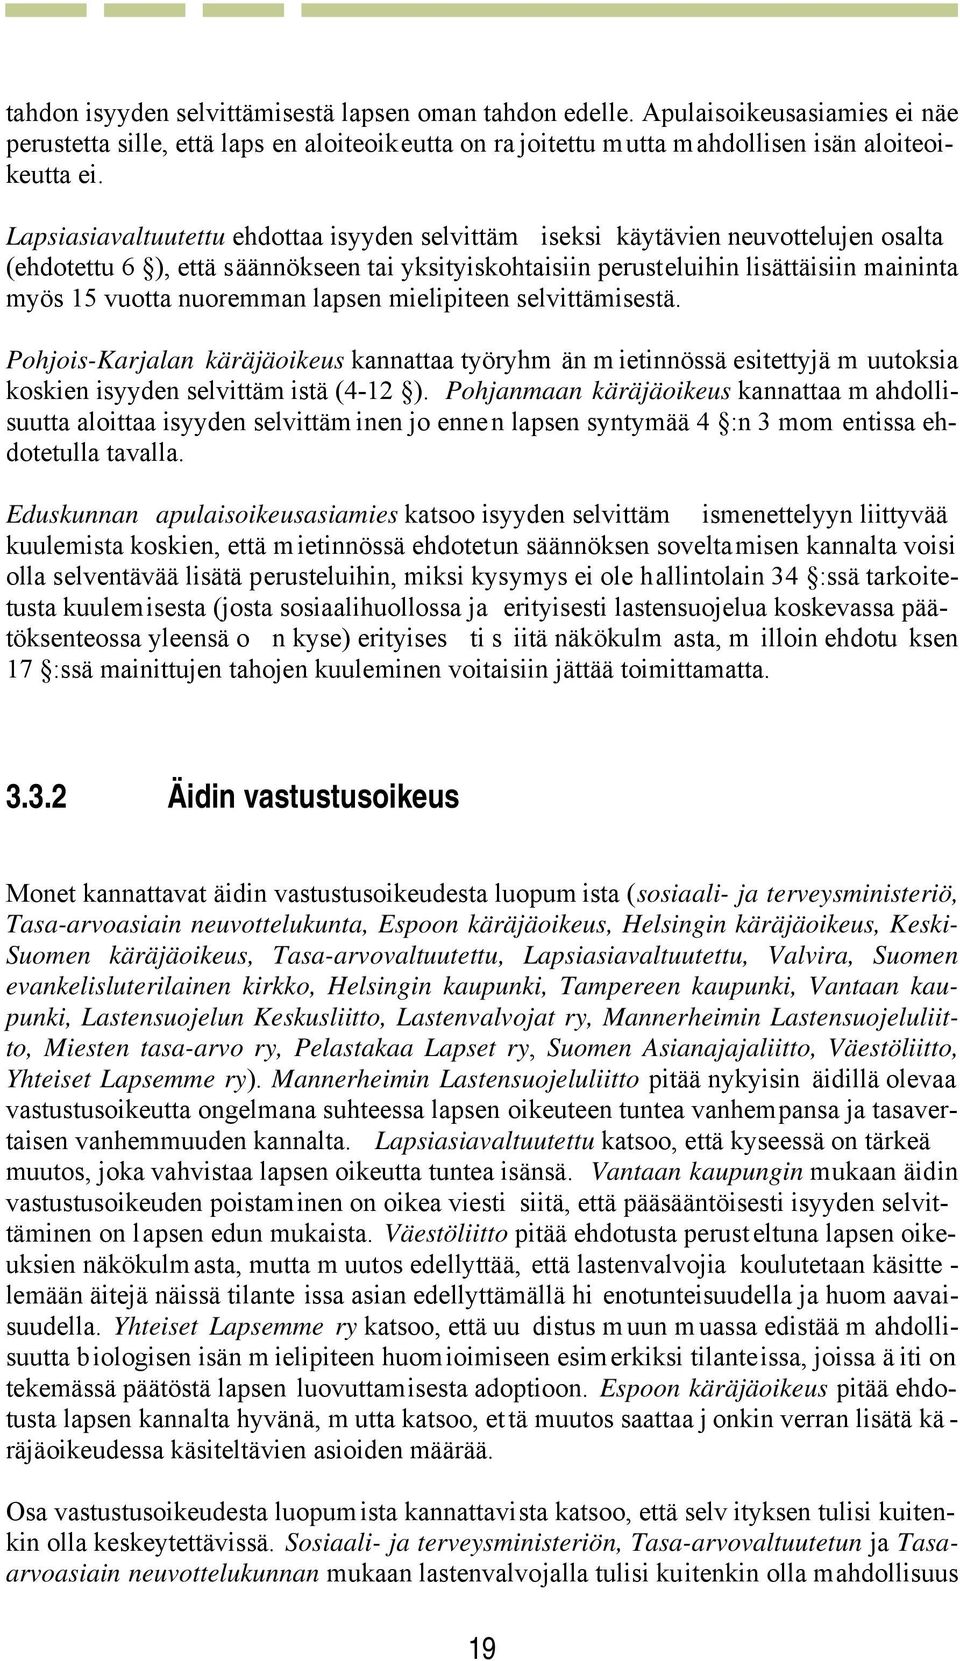 nuoremman lapsen mielipiteen selvittämisestä. Pohjois-Karjalan käräjäoikeus kannattaa työryhm än m ietinnössä esitettyjä m uutoksia koskien isyyden selvittäm istä (4-12 ).